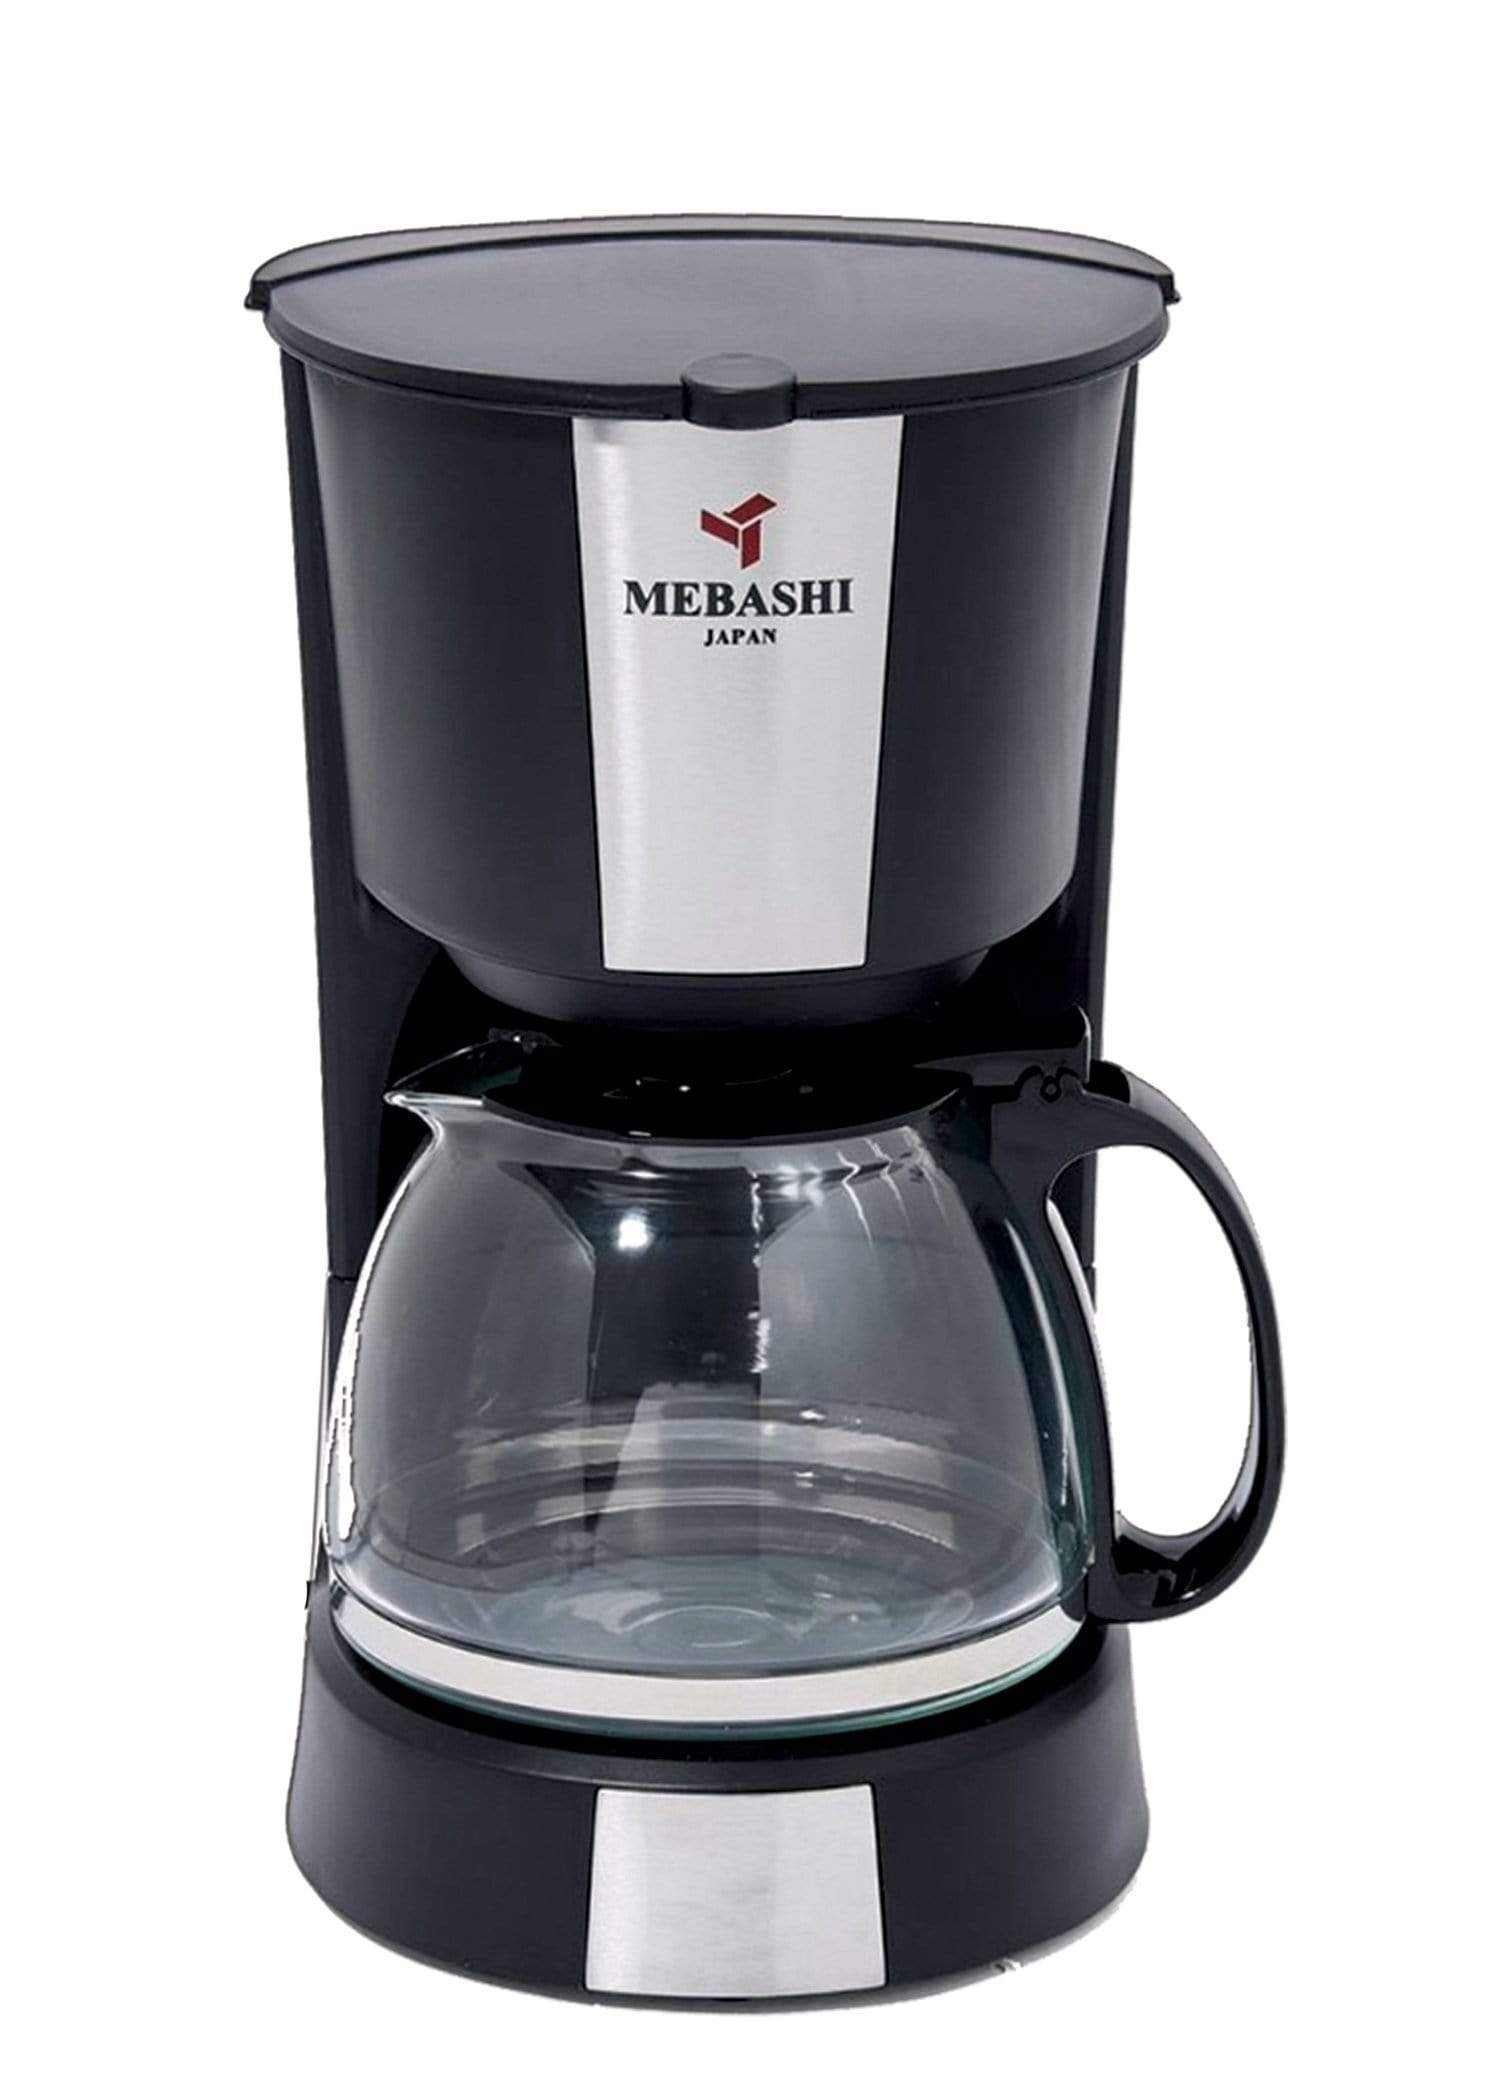 مكينة بلاك كوفي 1.2 لتر 900 واط مؤشر مستوى الماء ميباشي Mebashi Water Level Indicator 900W 1.2L Drip Coffee Machine